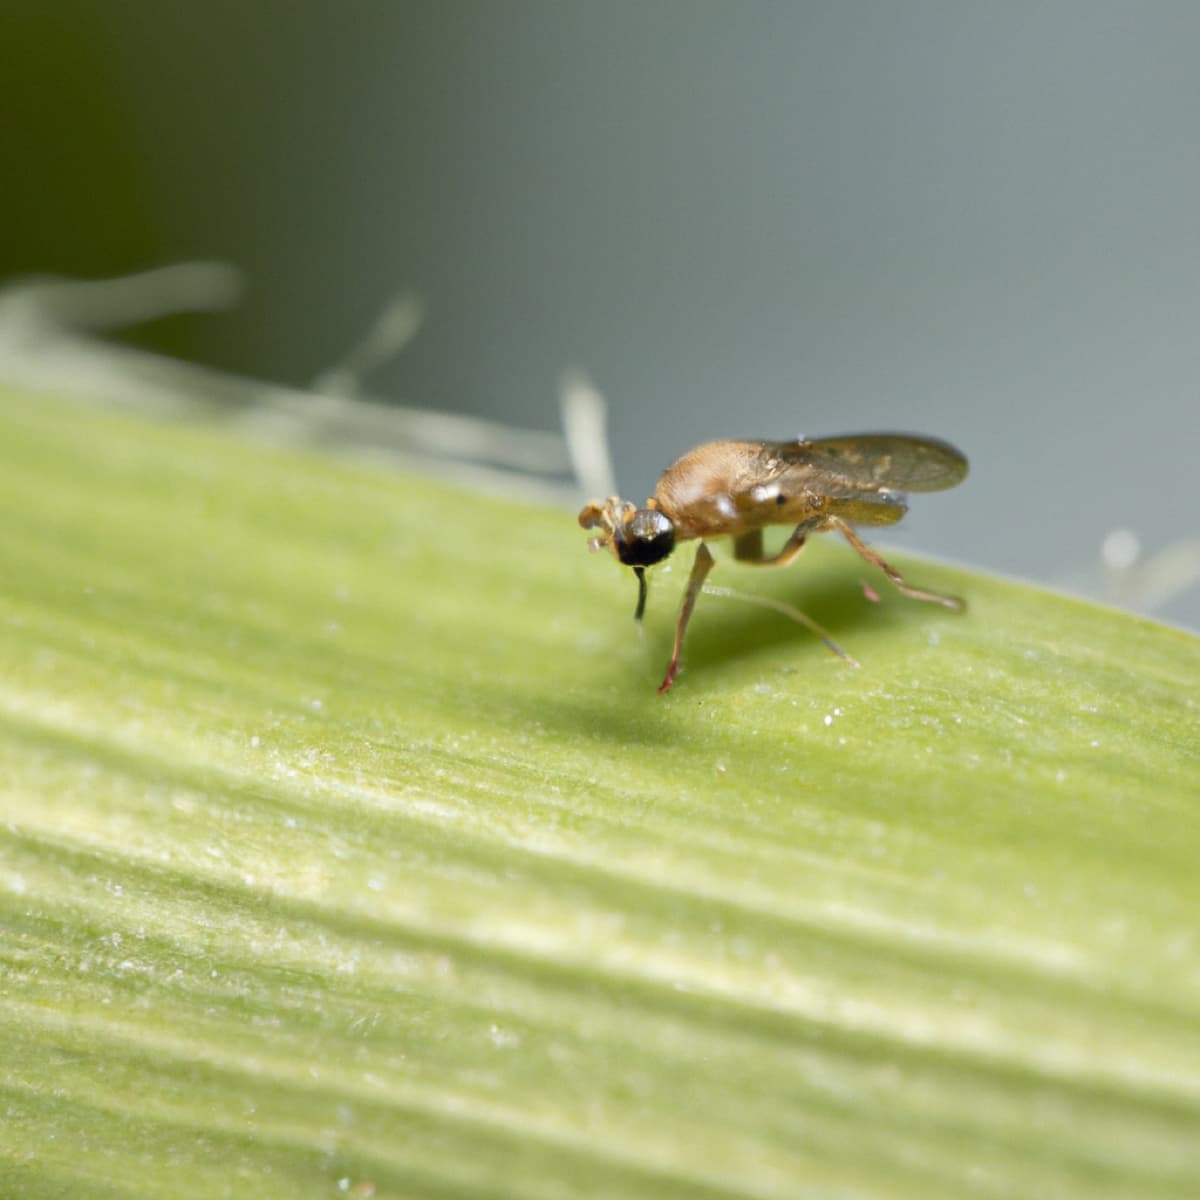 Maize Shoot-fly Pest